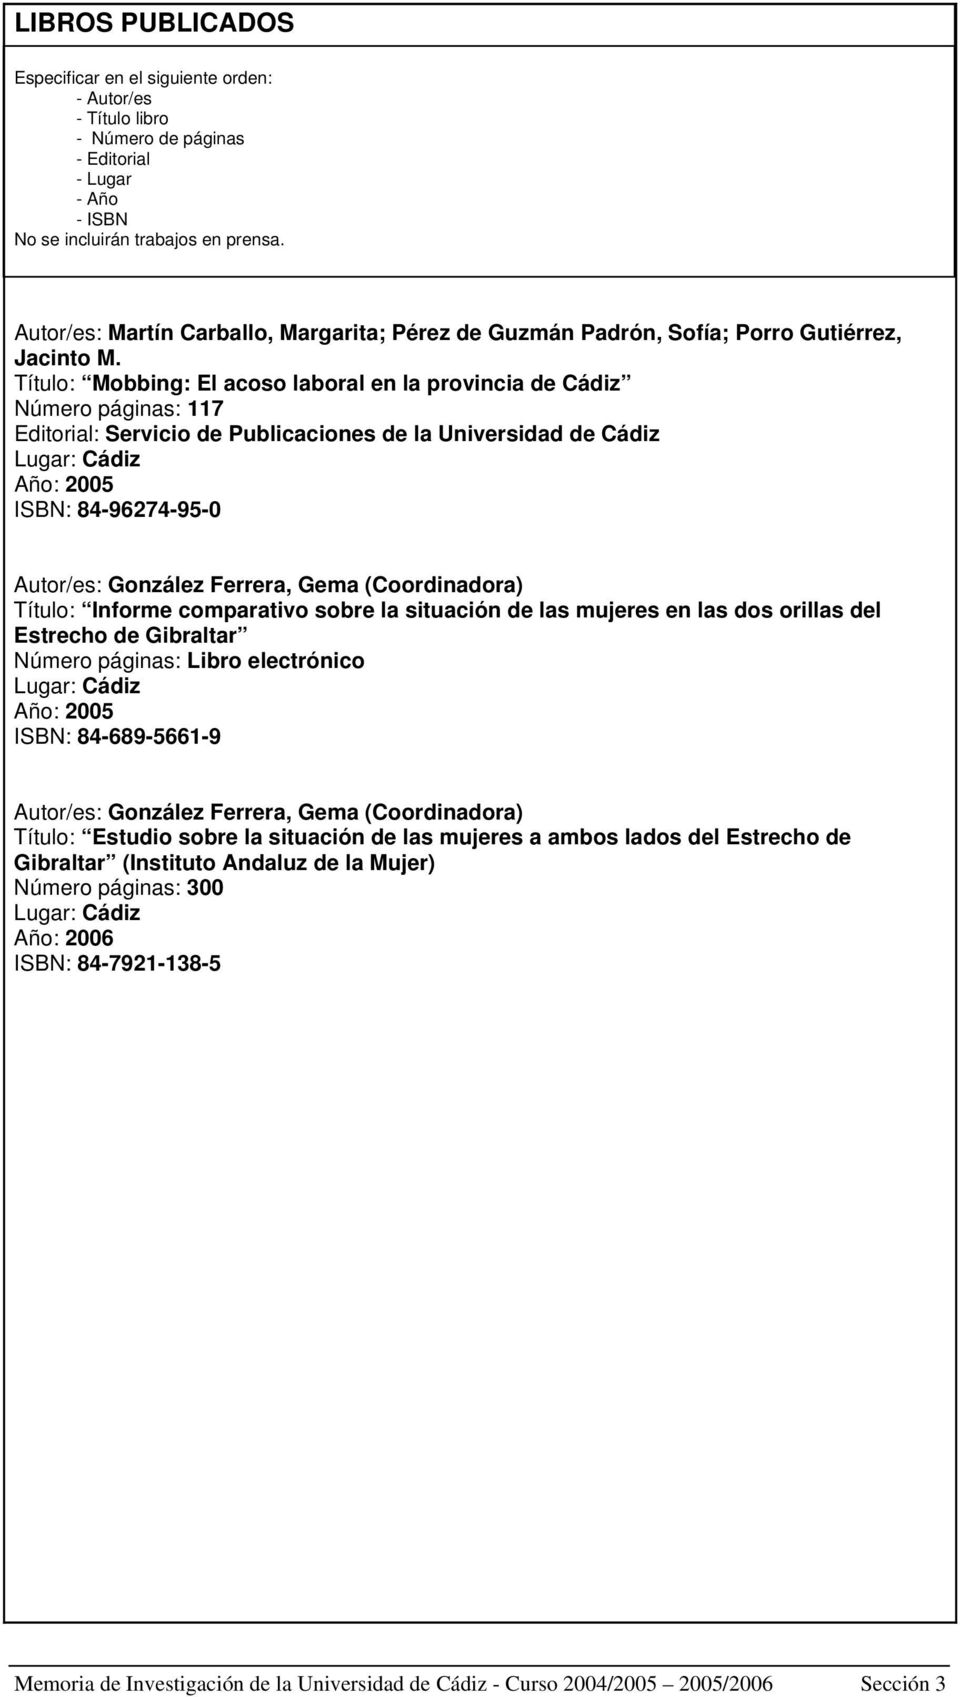 Título: Mobbing: El acoso laboral en la provincia de Cádiz Número páginas: 117 Editorial: Servicio de Publicaciones de la Universidad de Cádiz Lugar: Cádiz Año: 2005 ISBN: 84-96274-95-0 Autor/es: